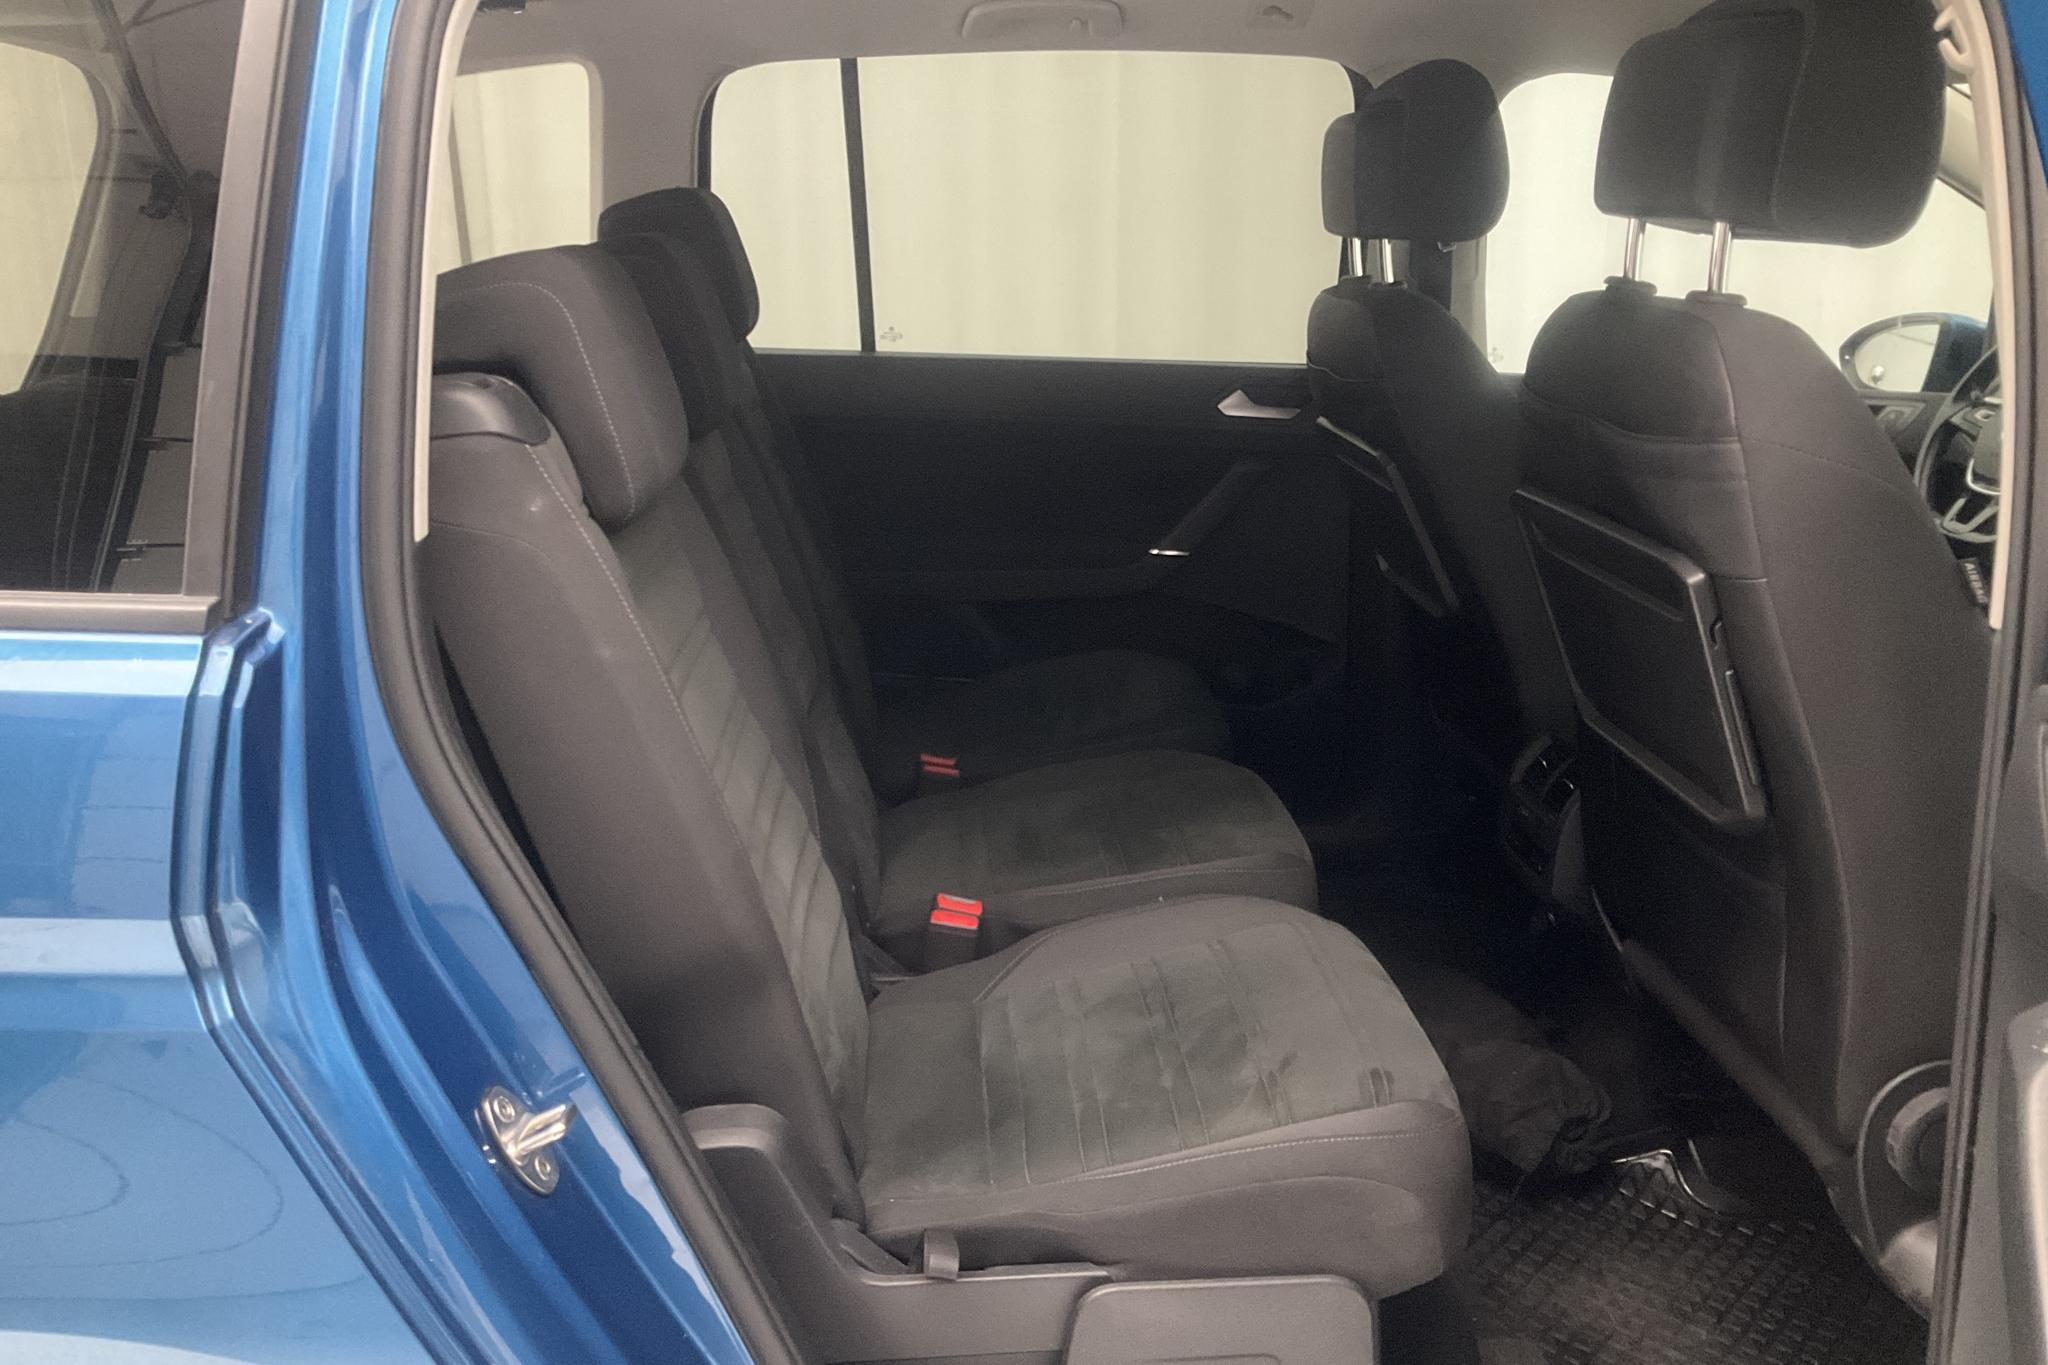 VW Touran 1.5 TSI (150hk) - 61 680 km - Automatic - blue - 2020